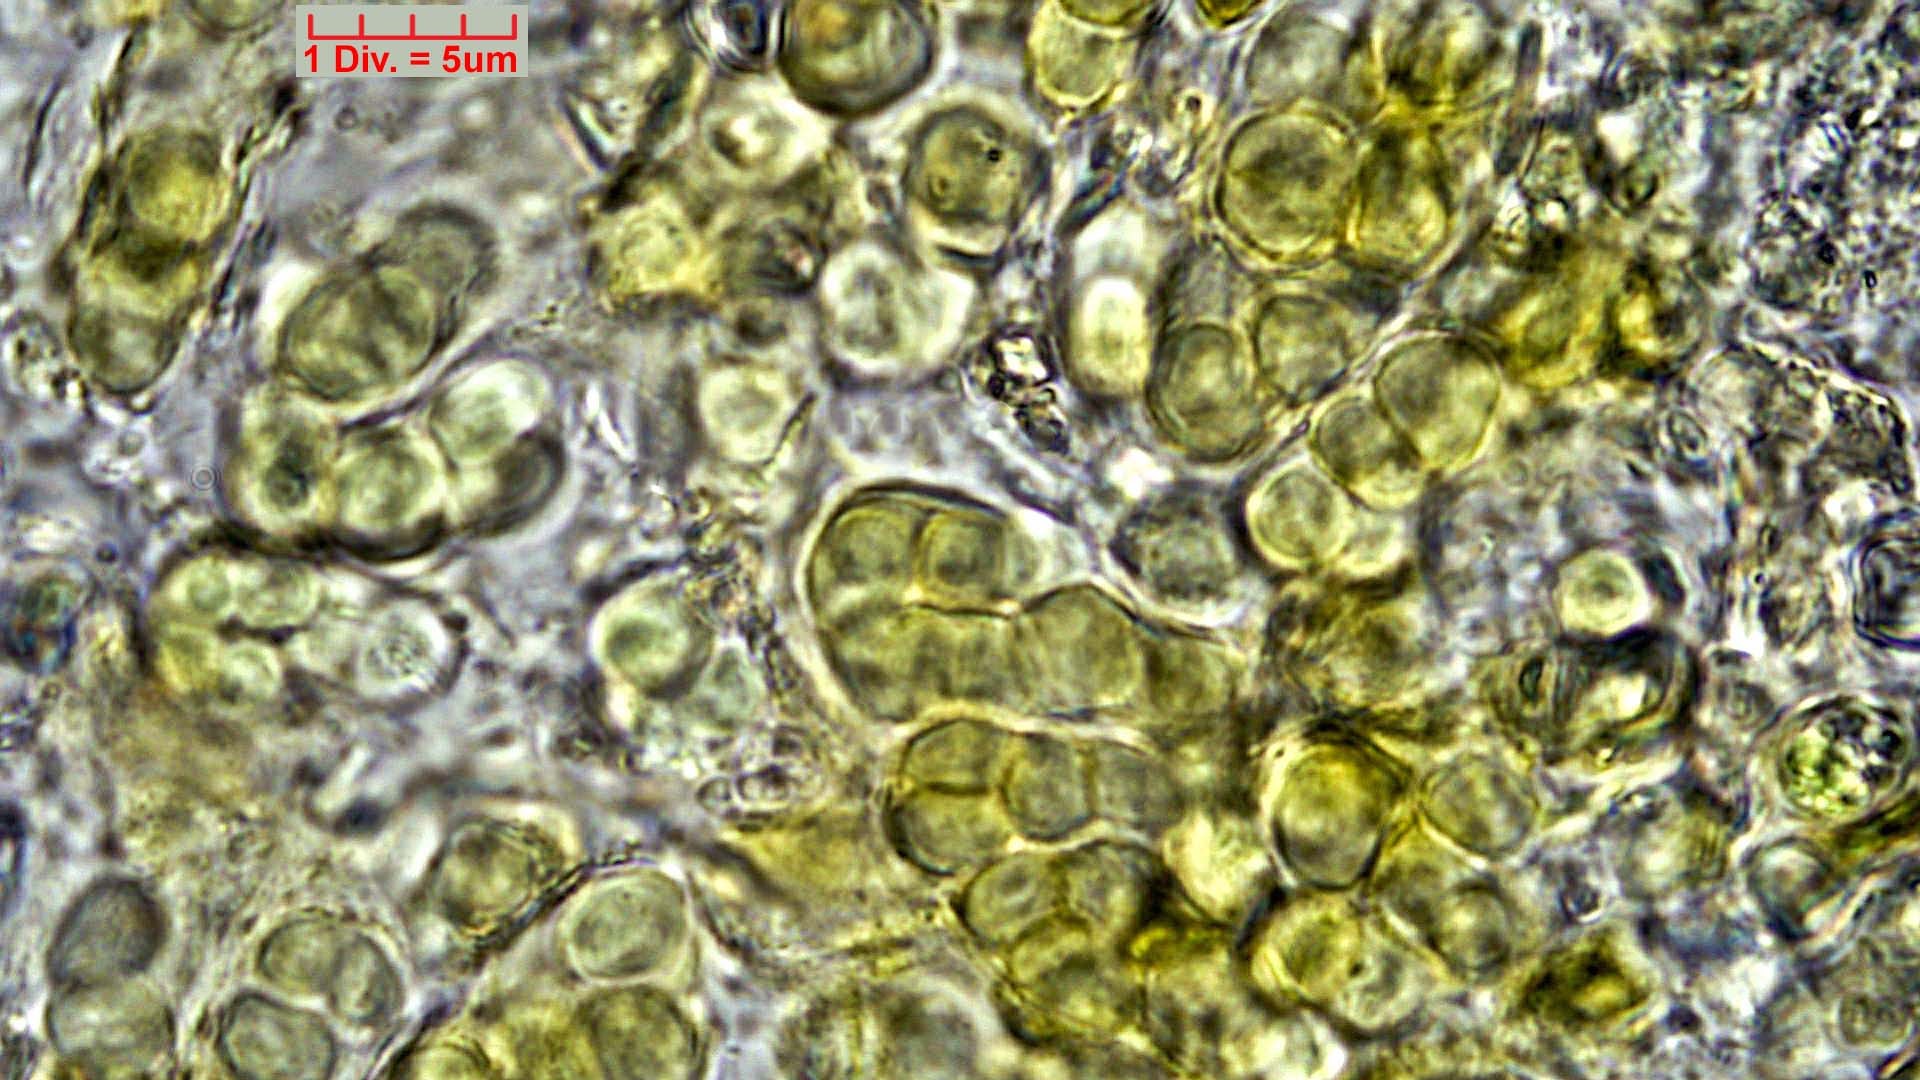 ././Cyanobacteria/Pleurocapsales/Hyellaceae/Pleurocapsa/fuliginosa/pleurocapsa-fuliginosa-165.jpg